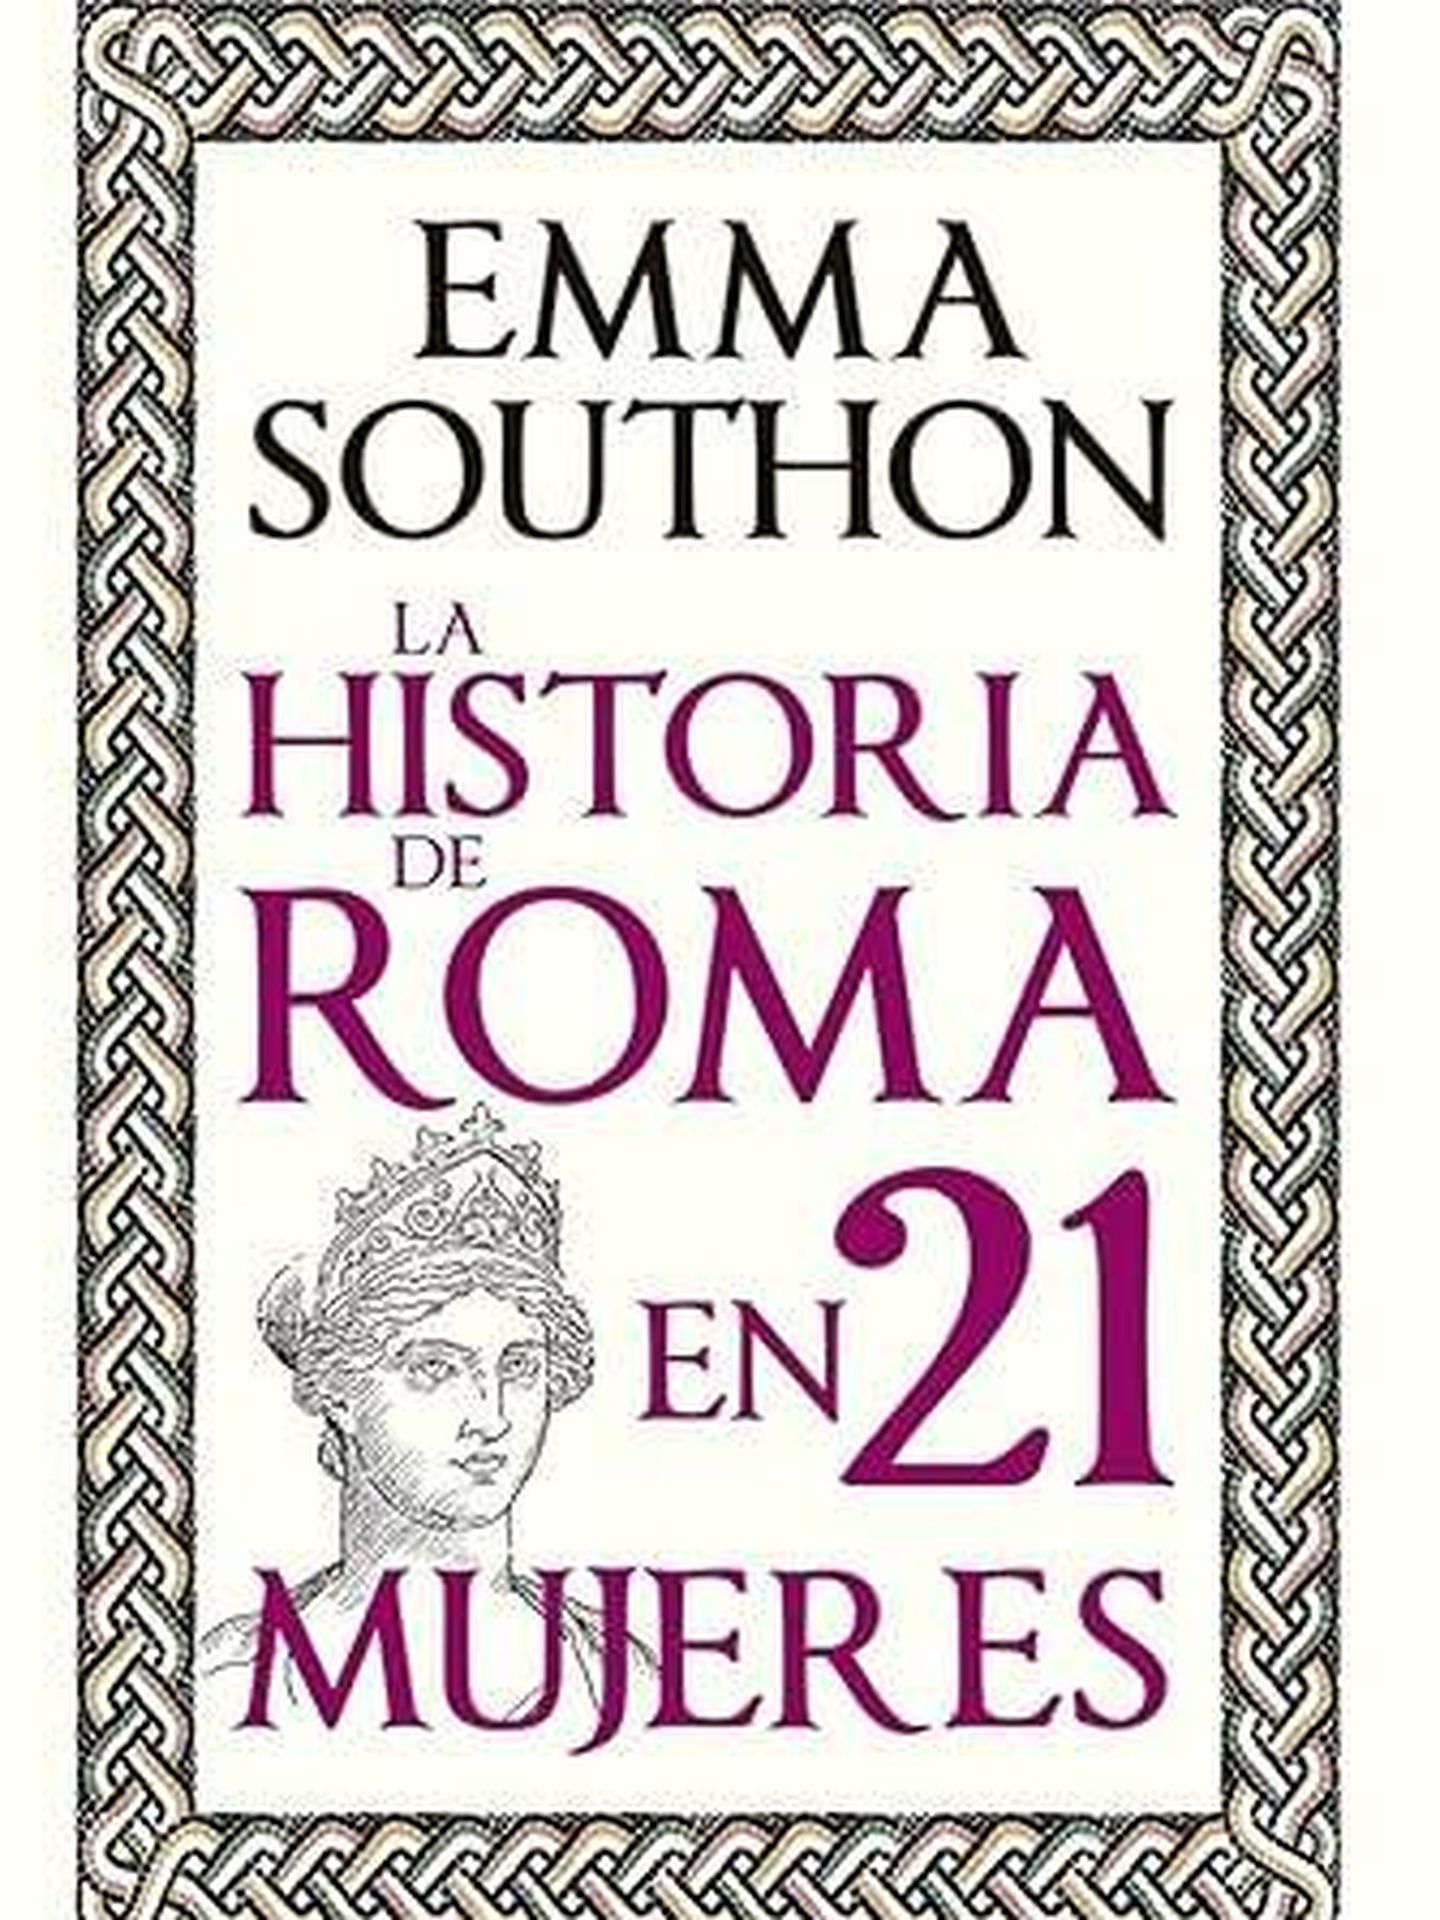 Portada de 'La Historia de Roma en 21 mujeres', de Emma Southon. 